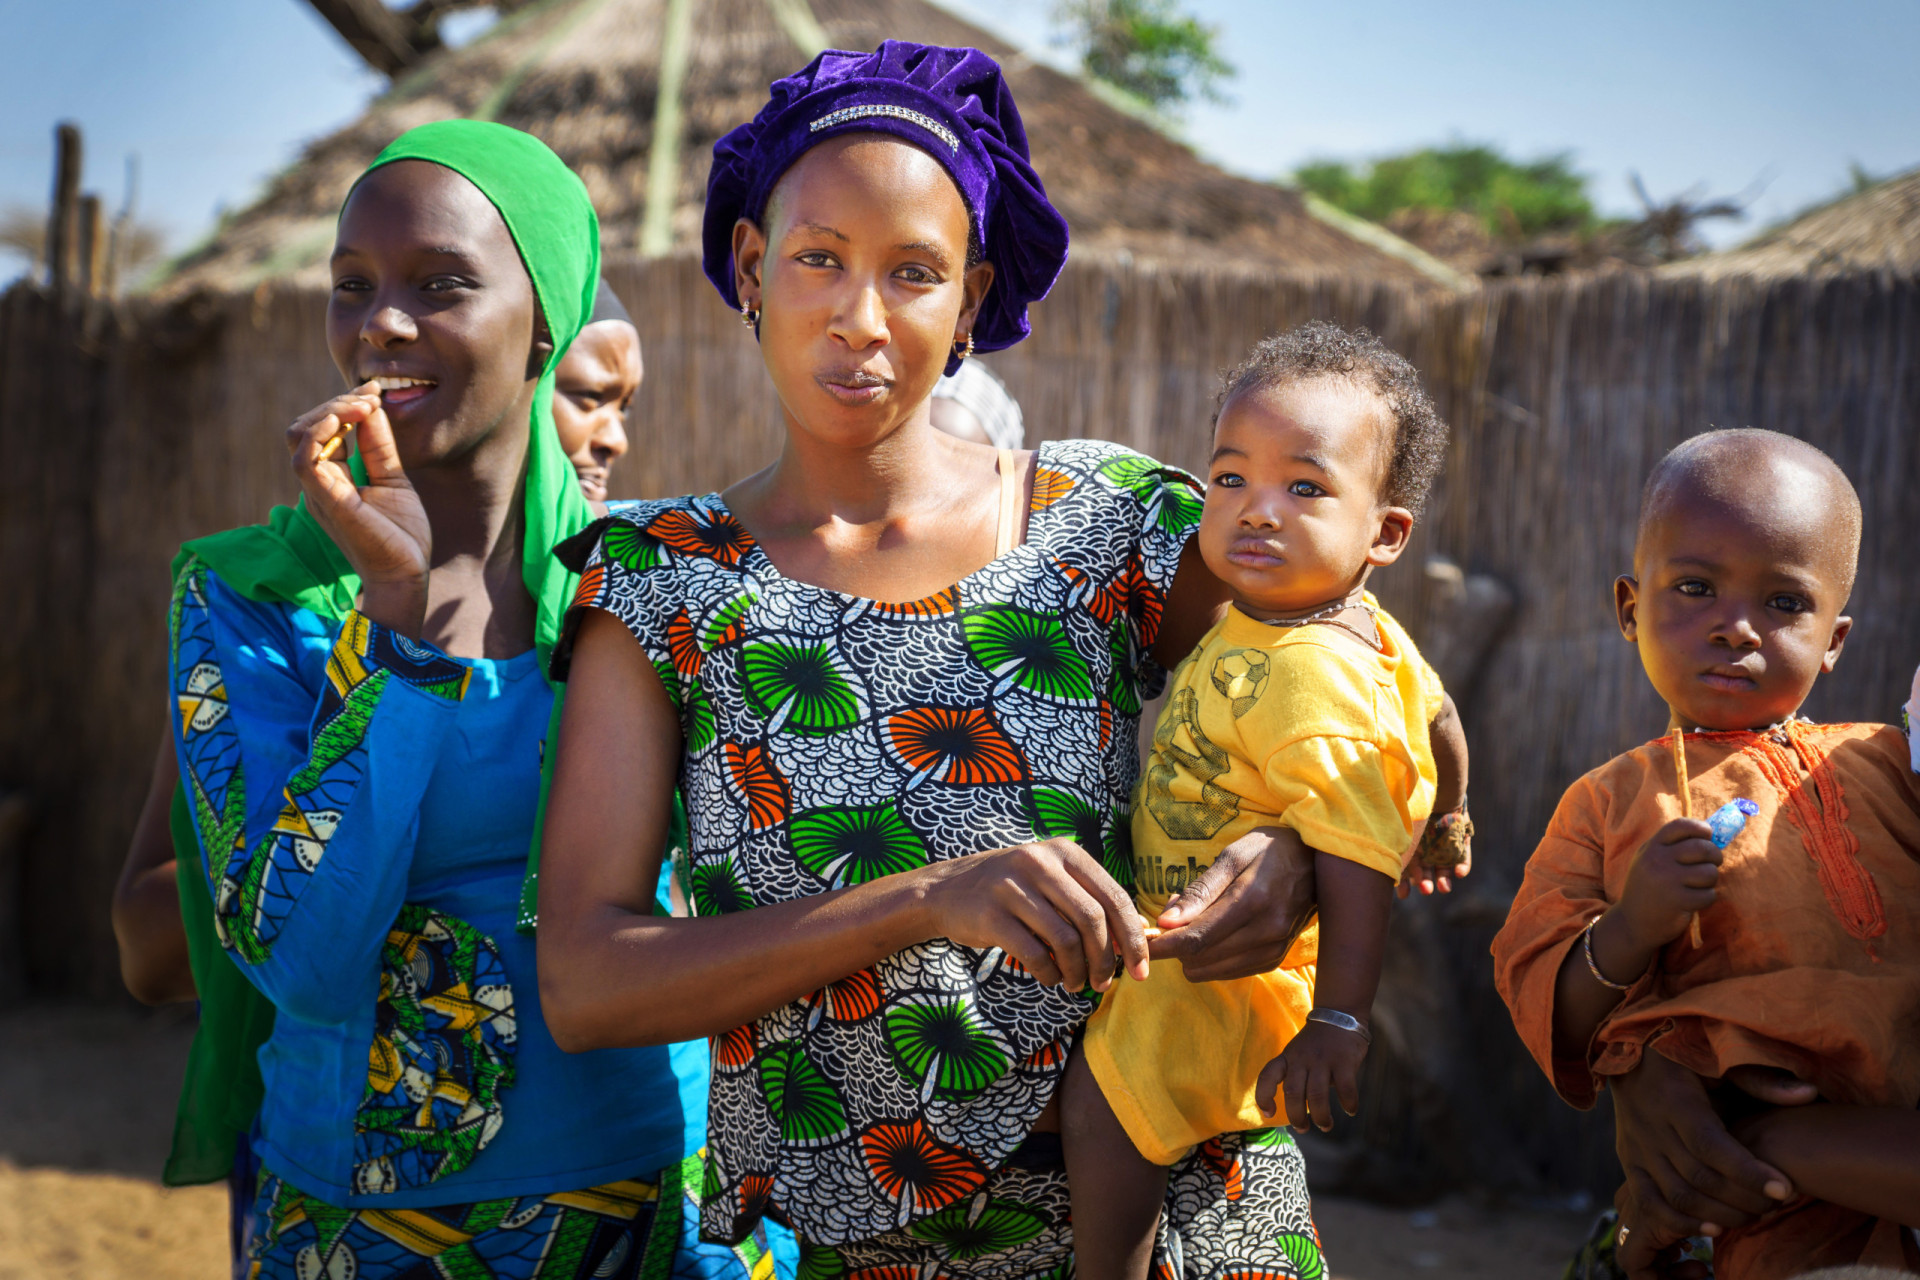 <p>Taux de fécondité moyen par femme : 4,17<br><br>Dans les pays à faible revenu comme le Sénégal, un plus grand nombre d'enfants signifie un plus grand nombre de futurs parents, ce qui est l'une des raisons de son taux de fécondité élevé.</p><p><a href="https://www.msn.com/fr-fr/community/channel/vid-7xx8mnucu55yw63we9va2gwr7uihbxwc68fxqp25x6tg4ftibpra?cvid=94631541bc0f4f89bfd59158d696ad7e">Suivez-nous et accédez tous les jours à du contenu exclusif</a></p>